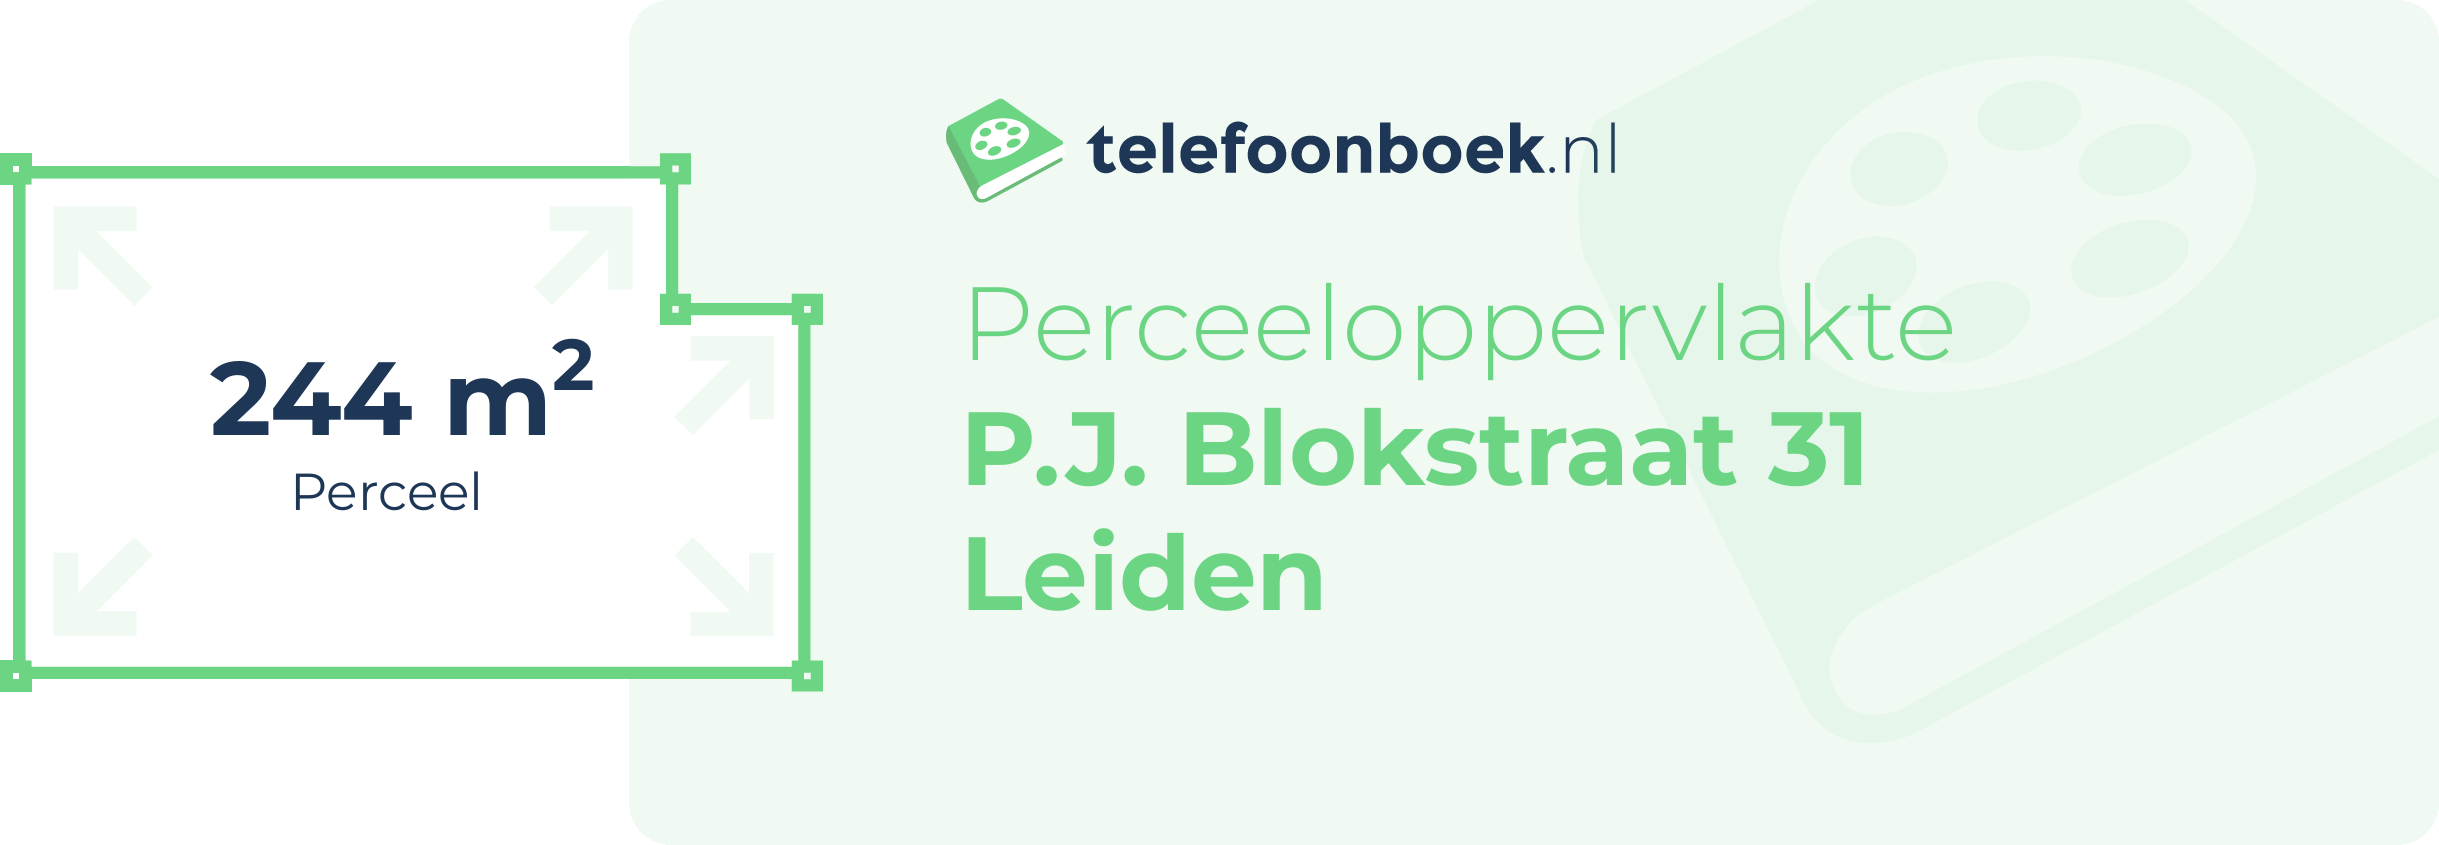 Perceeloppervlakte P.J. Blokstraat 31 Leiden